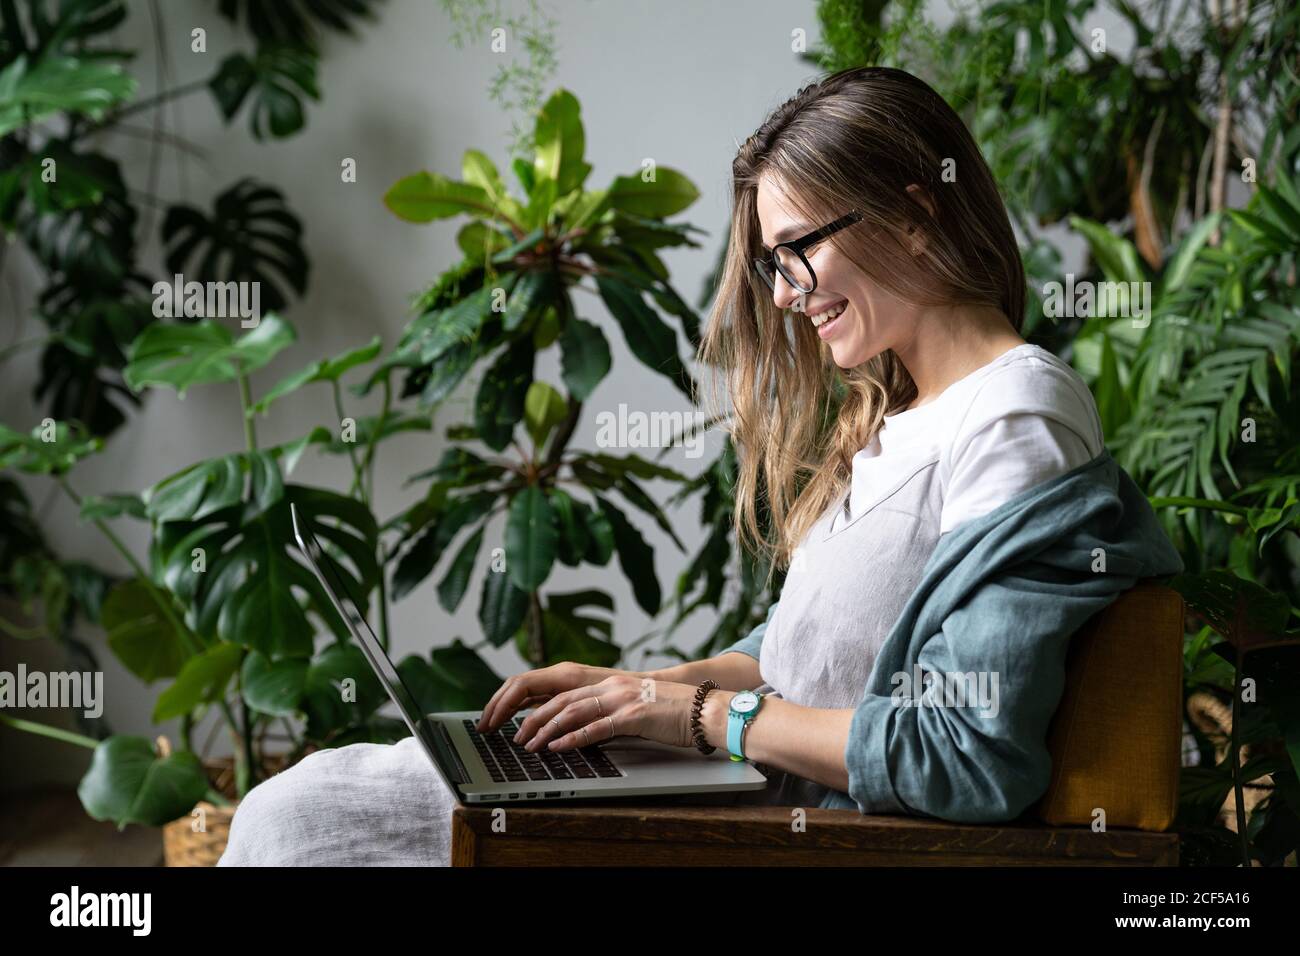 Gros plan portrait d'une femme souriante gardenier en lunettes porter une robe de lin, s'asseoir sur une chaise dans une maison verte, utiliser un ordinateur portable et parler sur Internet Banque D'Images